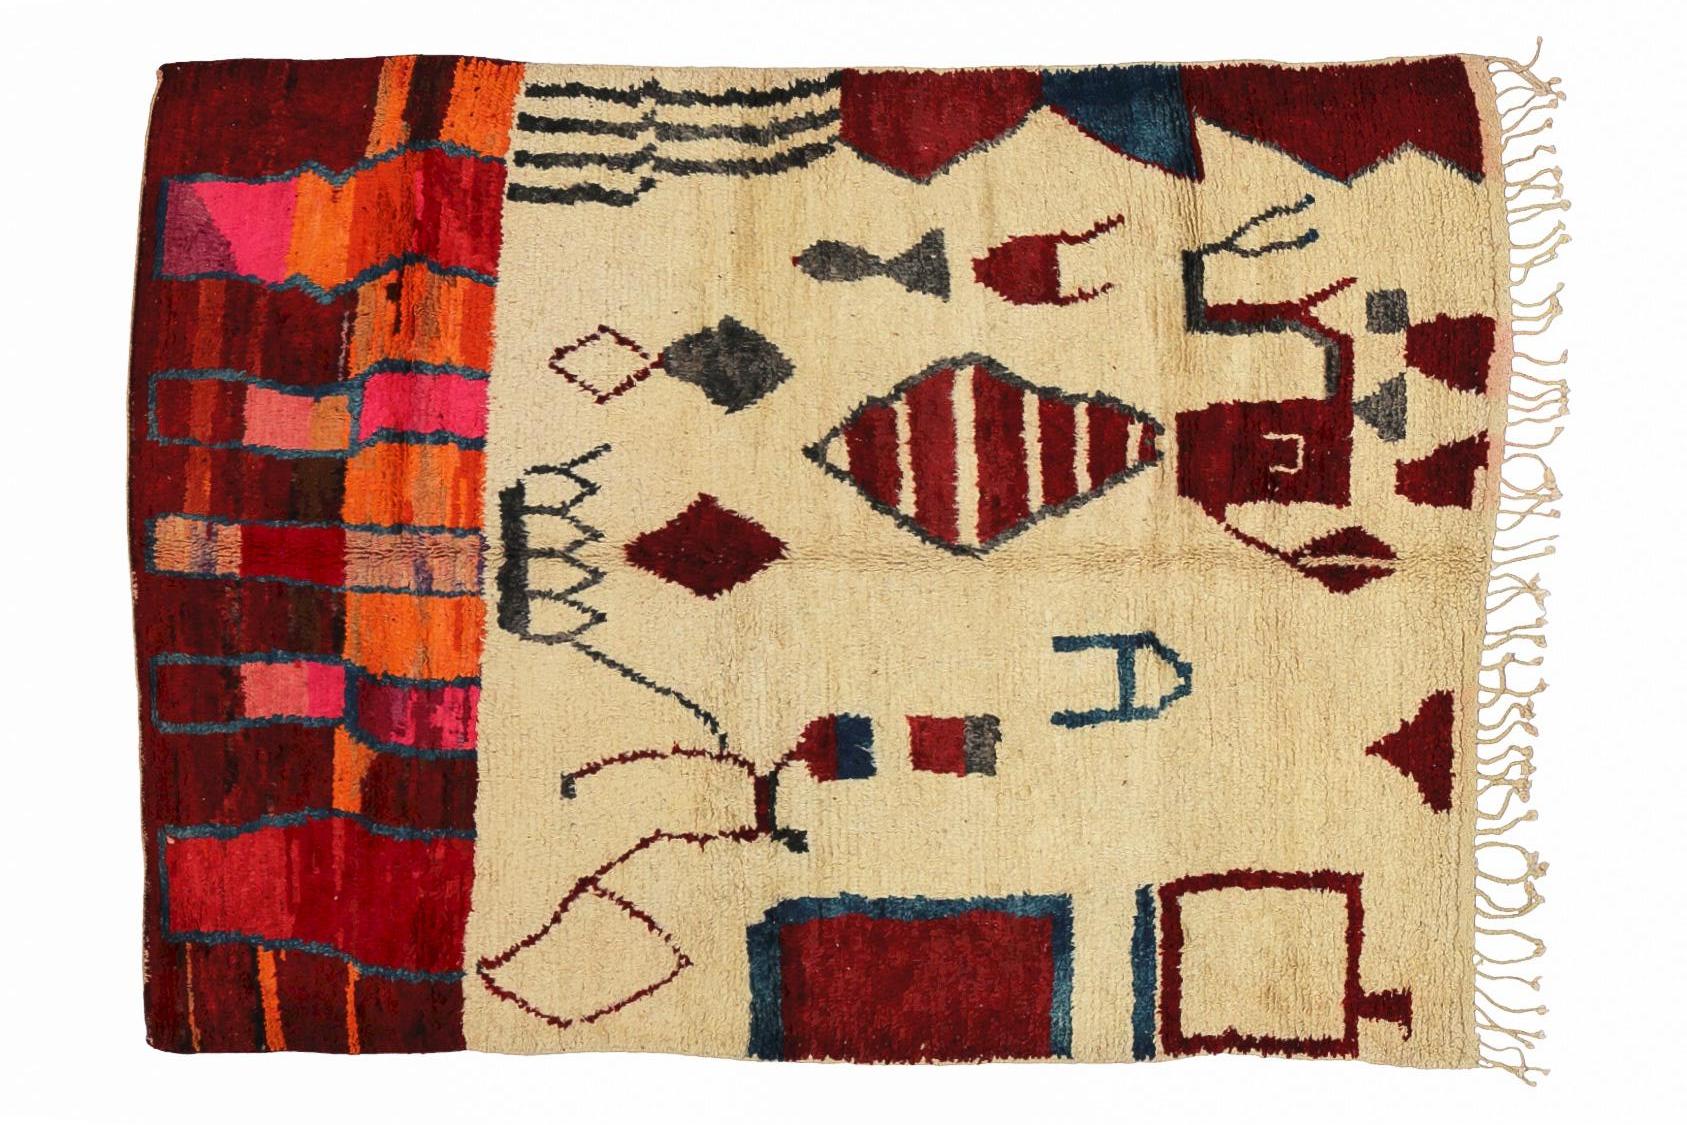 Der Boujaad-Teppich stammt aus der Region El Haouz im Mittleren Atlas in Marokko. Es gibt keine modernen Knüpfmaschinen, die Teppiche werden wie vor einigen Jahrhunderten von sehr talentierten Künstlerinnen von Hand geknüpft. Das Hauptmerkmal von